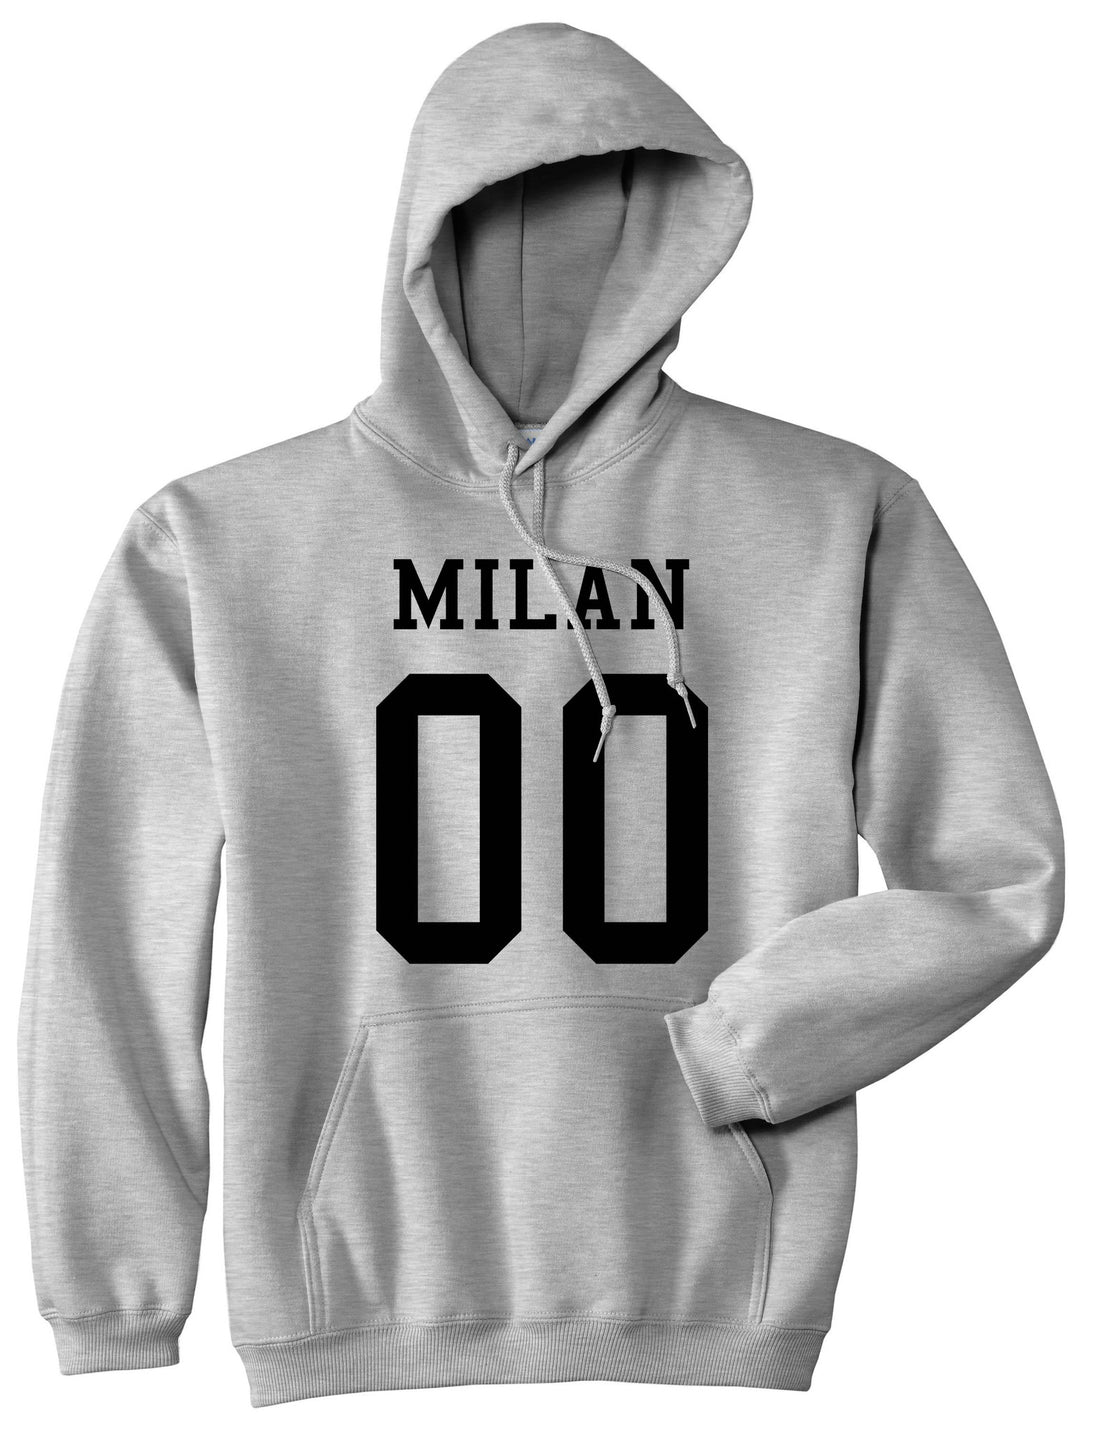 Milan Team 00 Jersey Boys Kids Pullover Hoodie Hoody in Grey By Kings Of NY